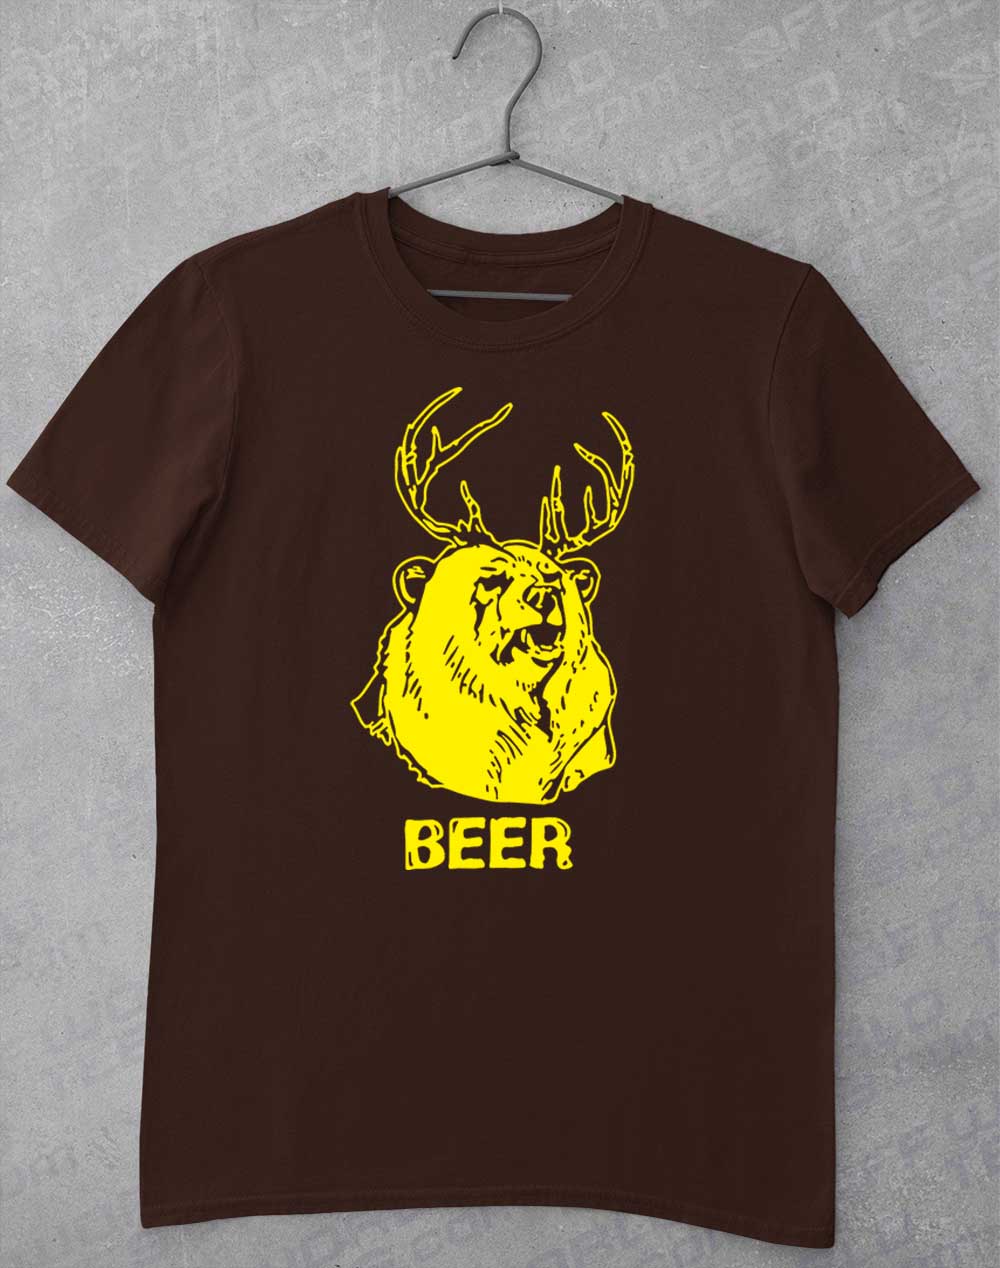 Dark Chocolate - Mac's Beer T-Shirt